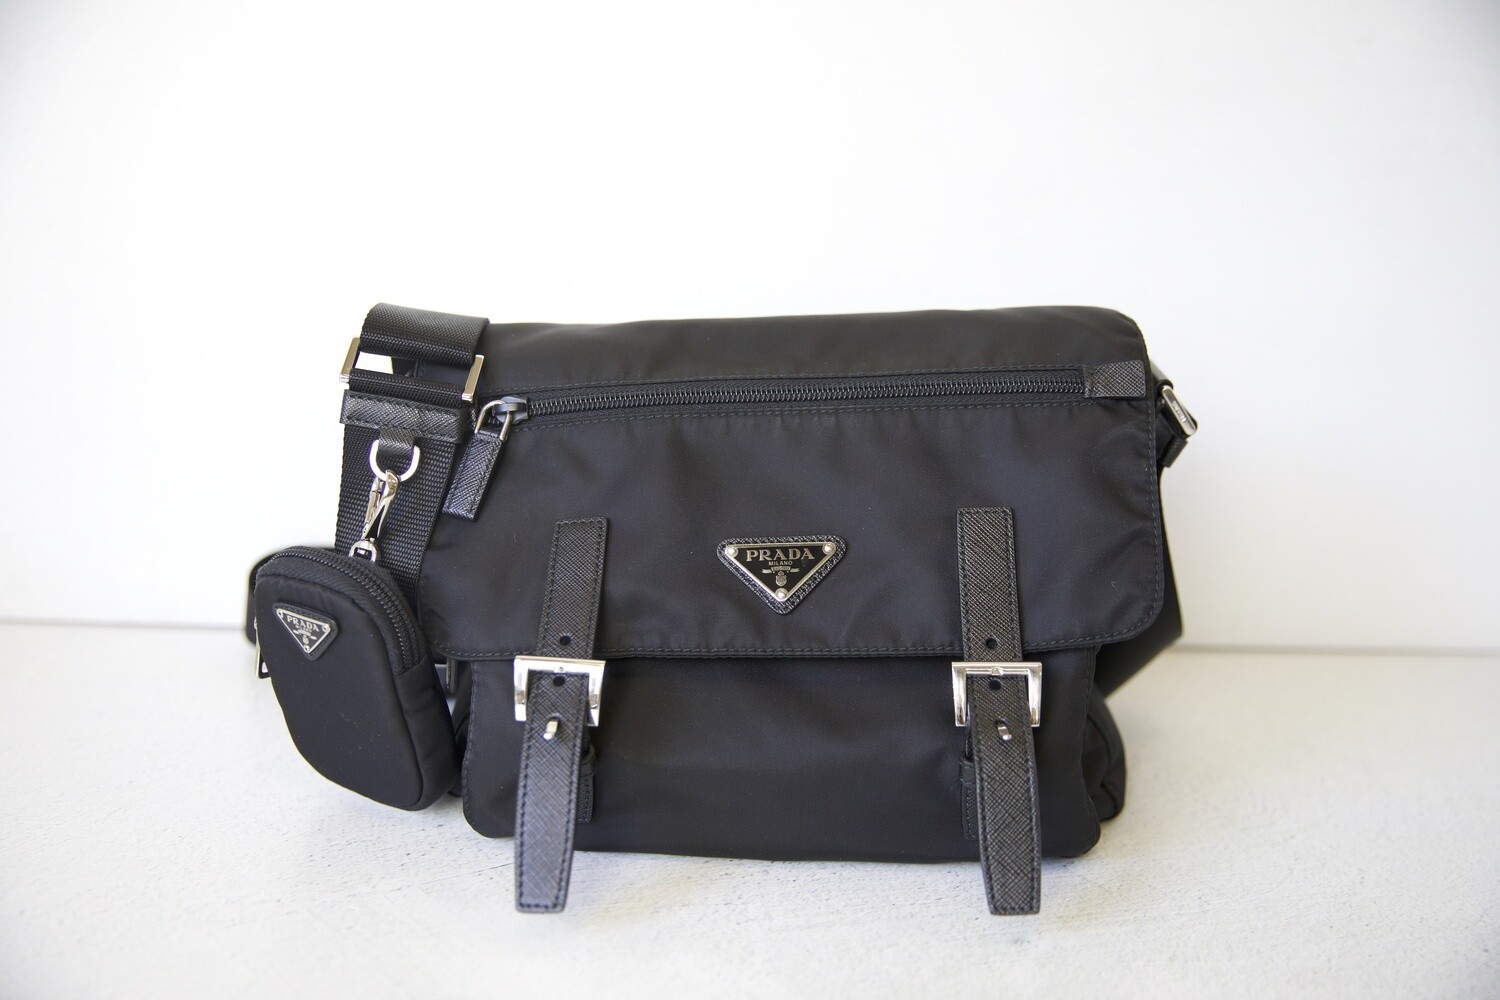 Black Re-nylon Shoulder Bag